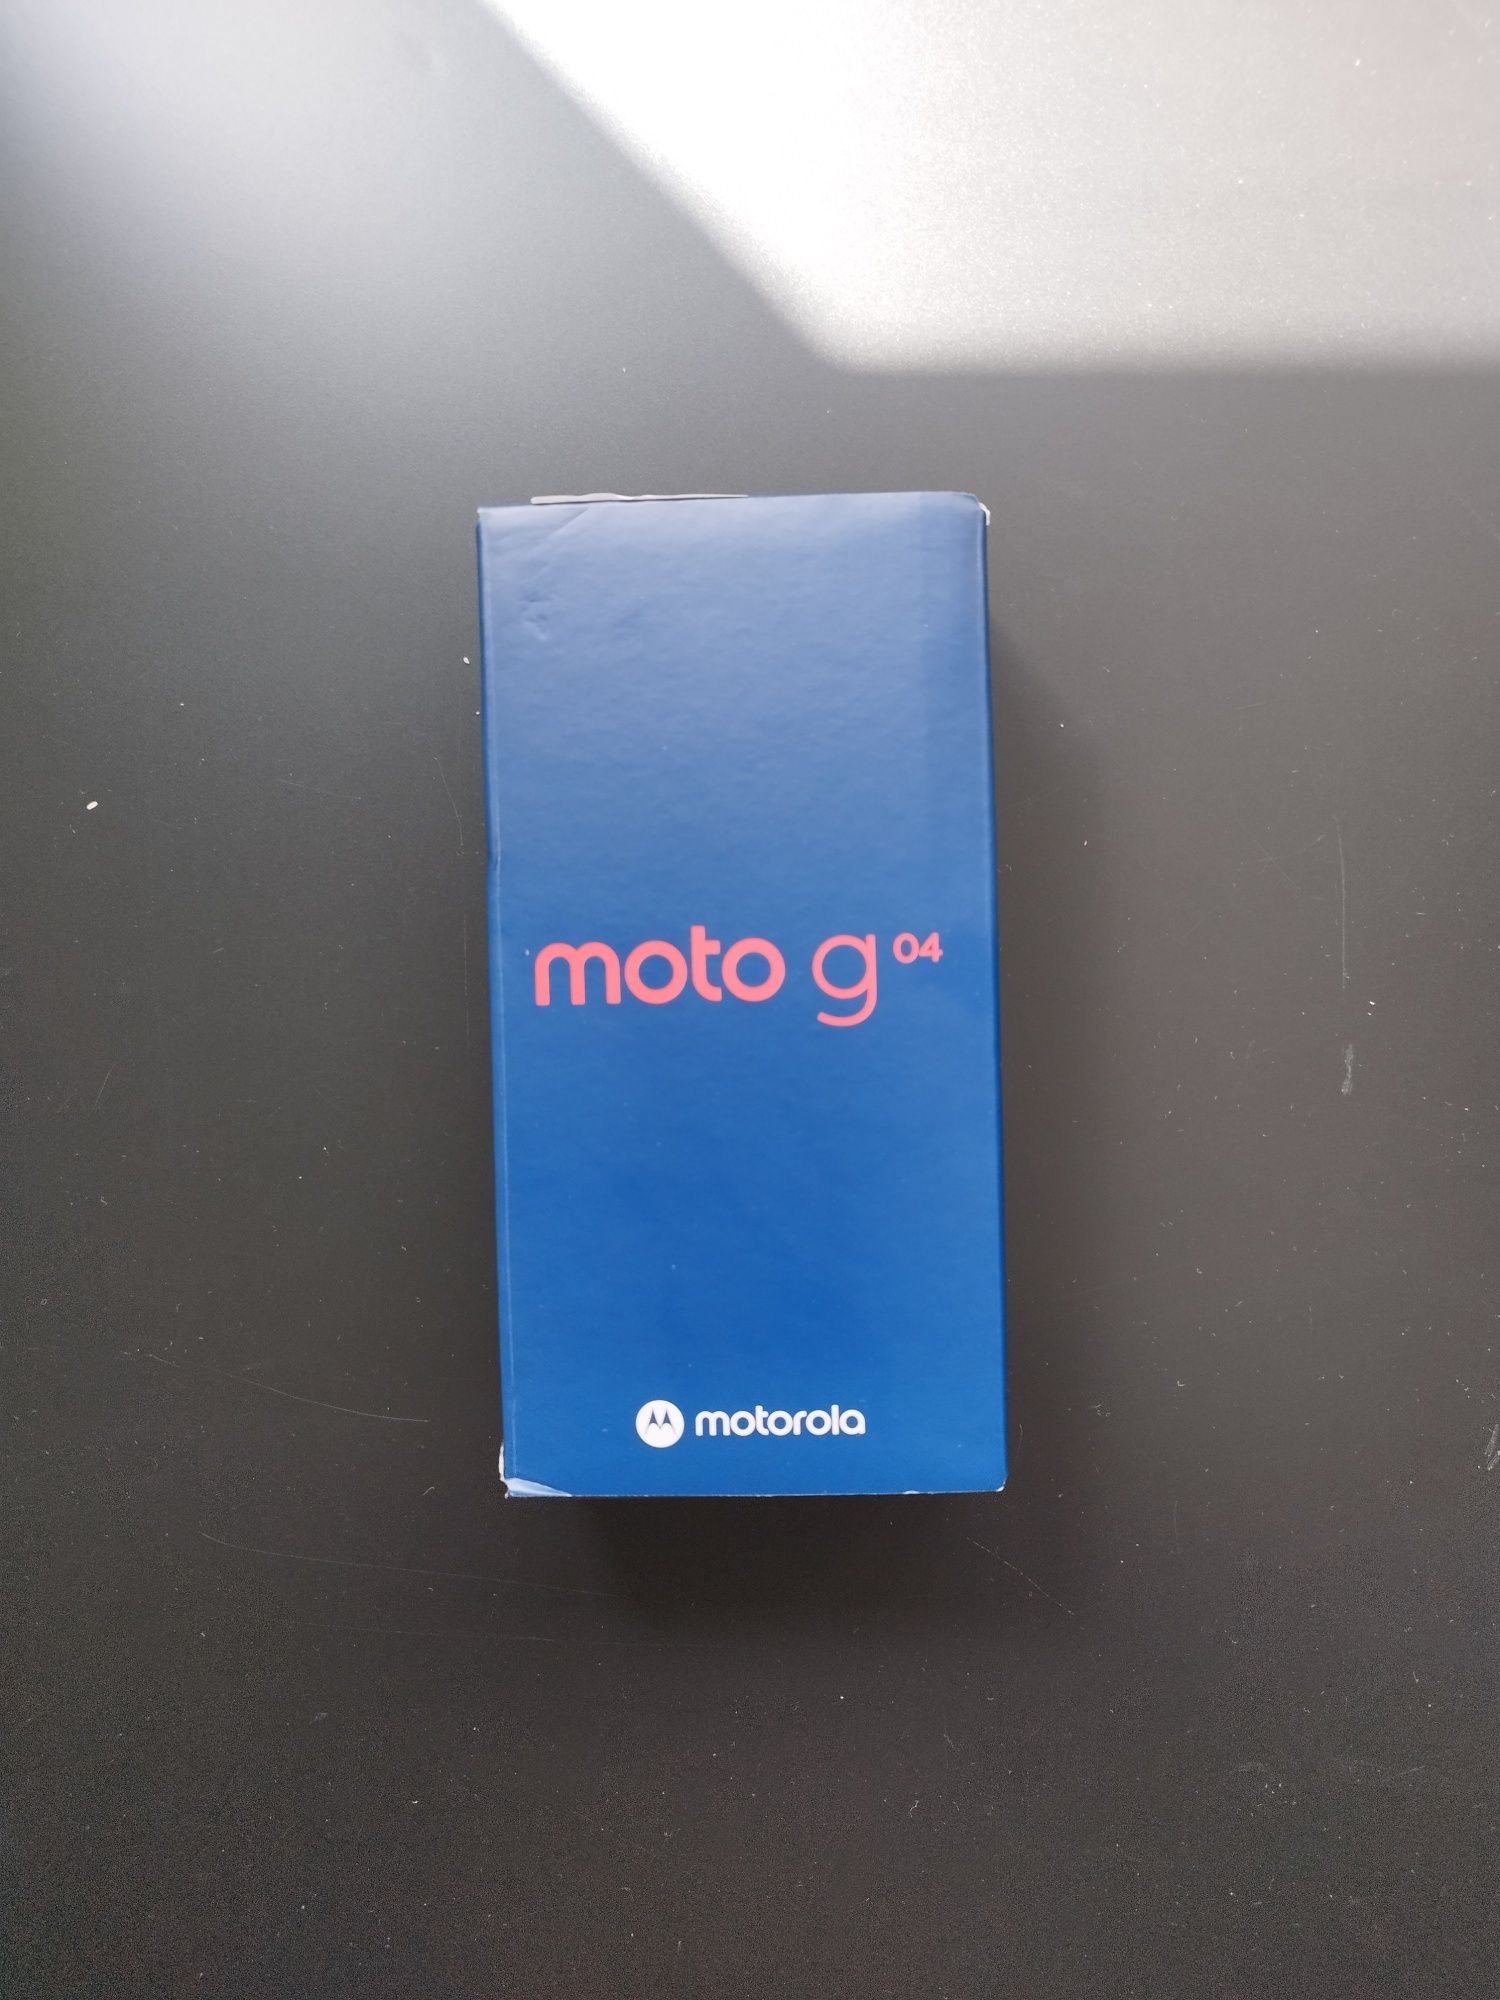 Телефон Motorola moto g04
Отворен е само за снимките
Работи с всички